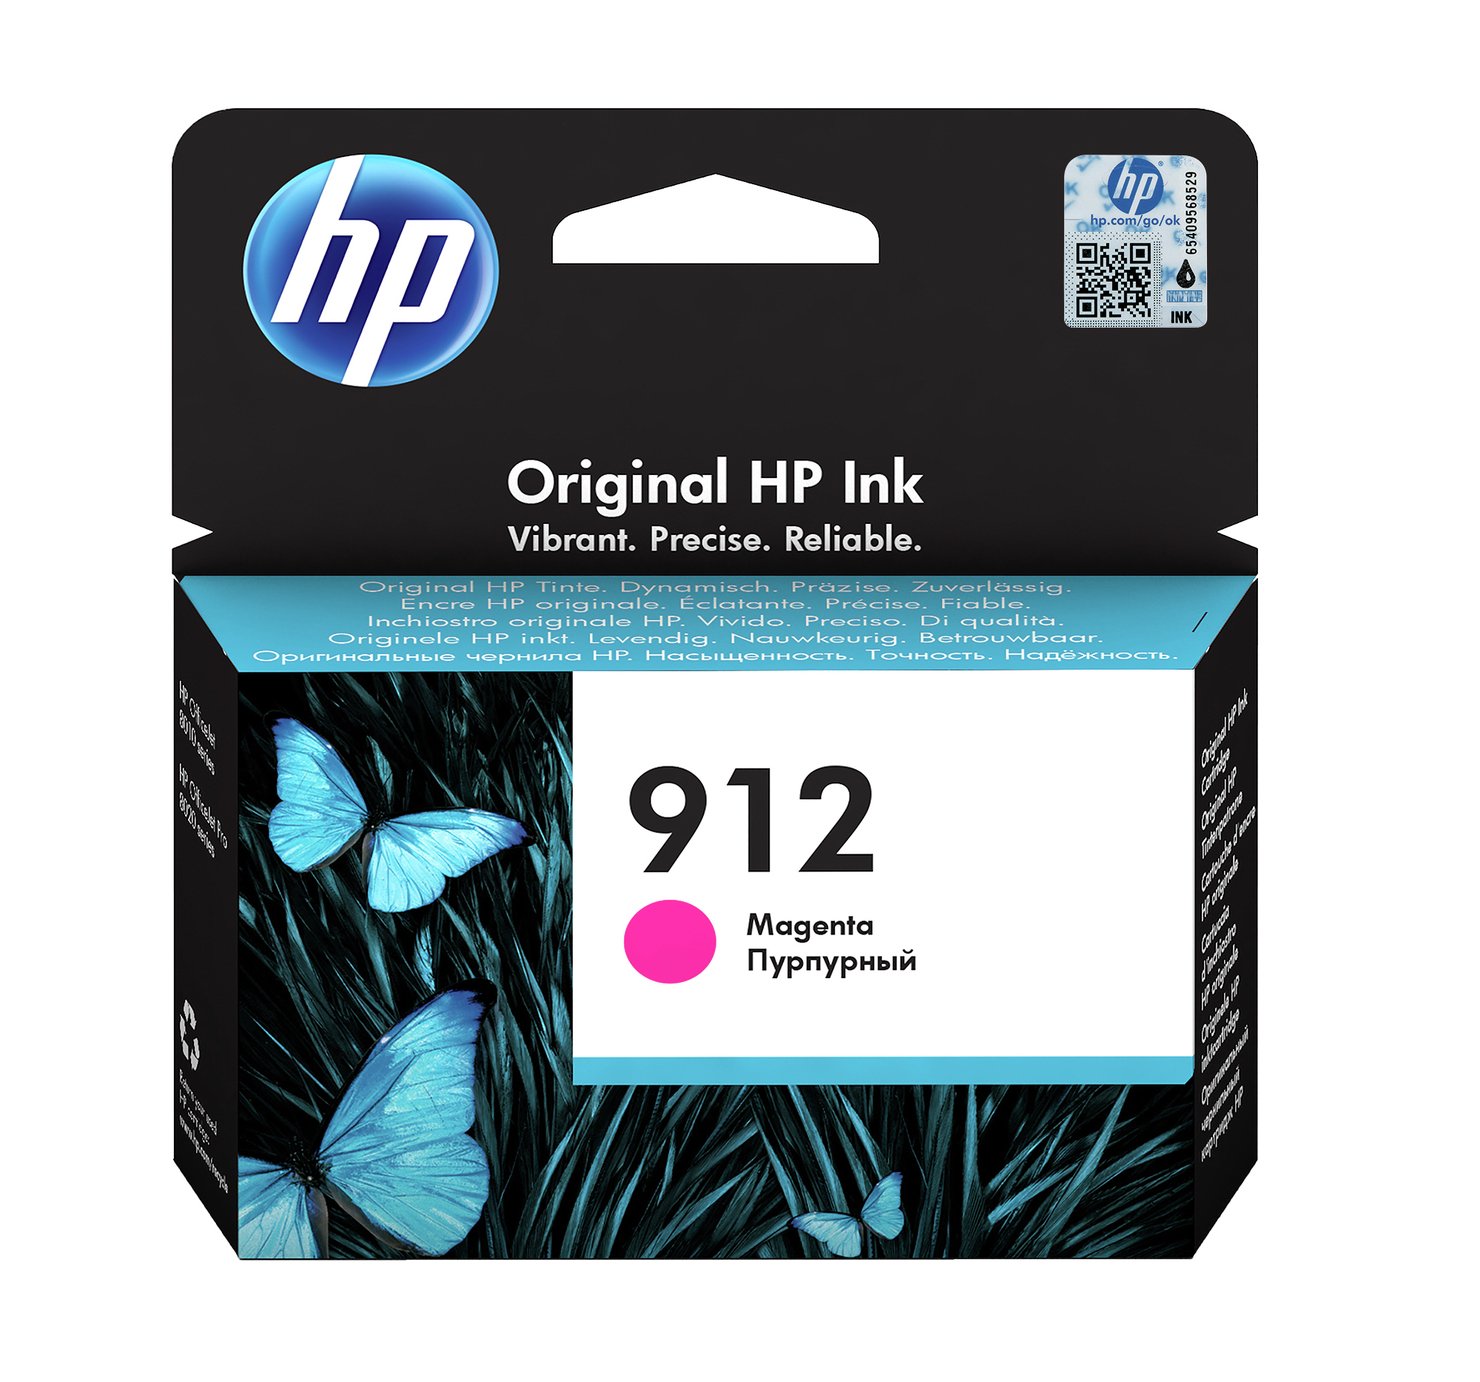 HP 912 Original Ink Cartridge - Magenta